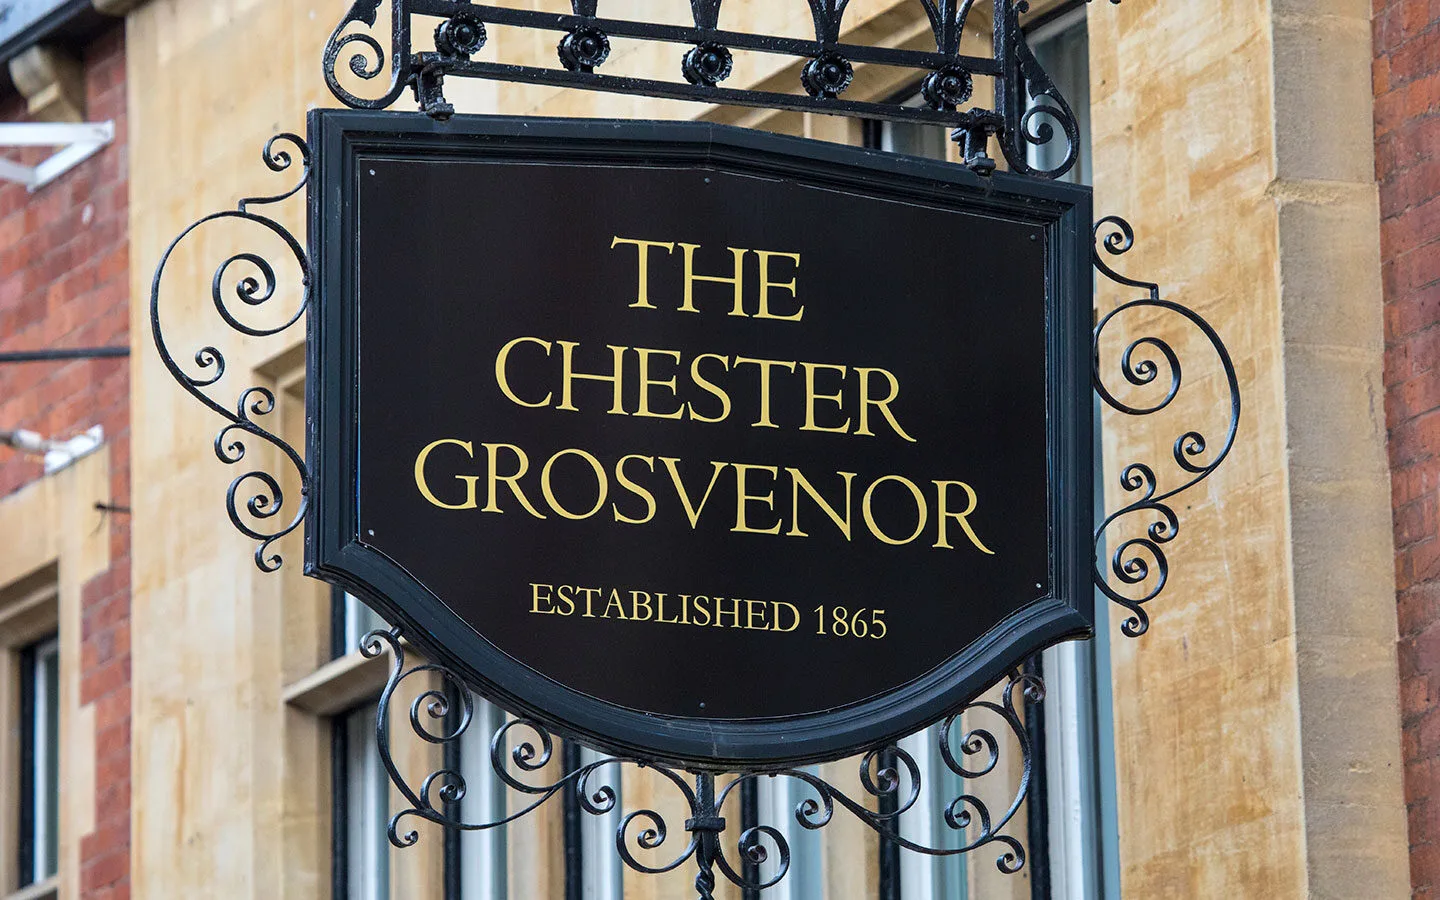 The Chester Grosvenor hotel